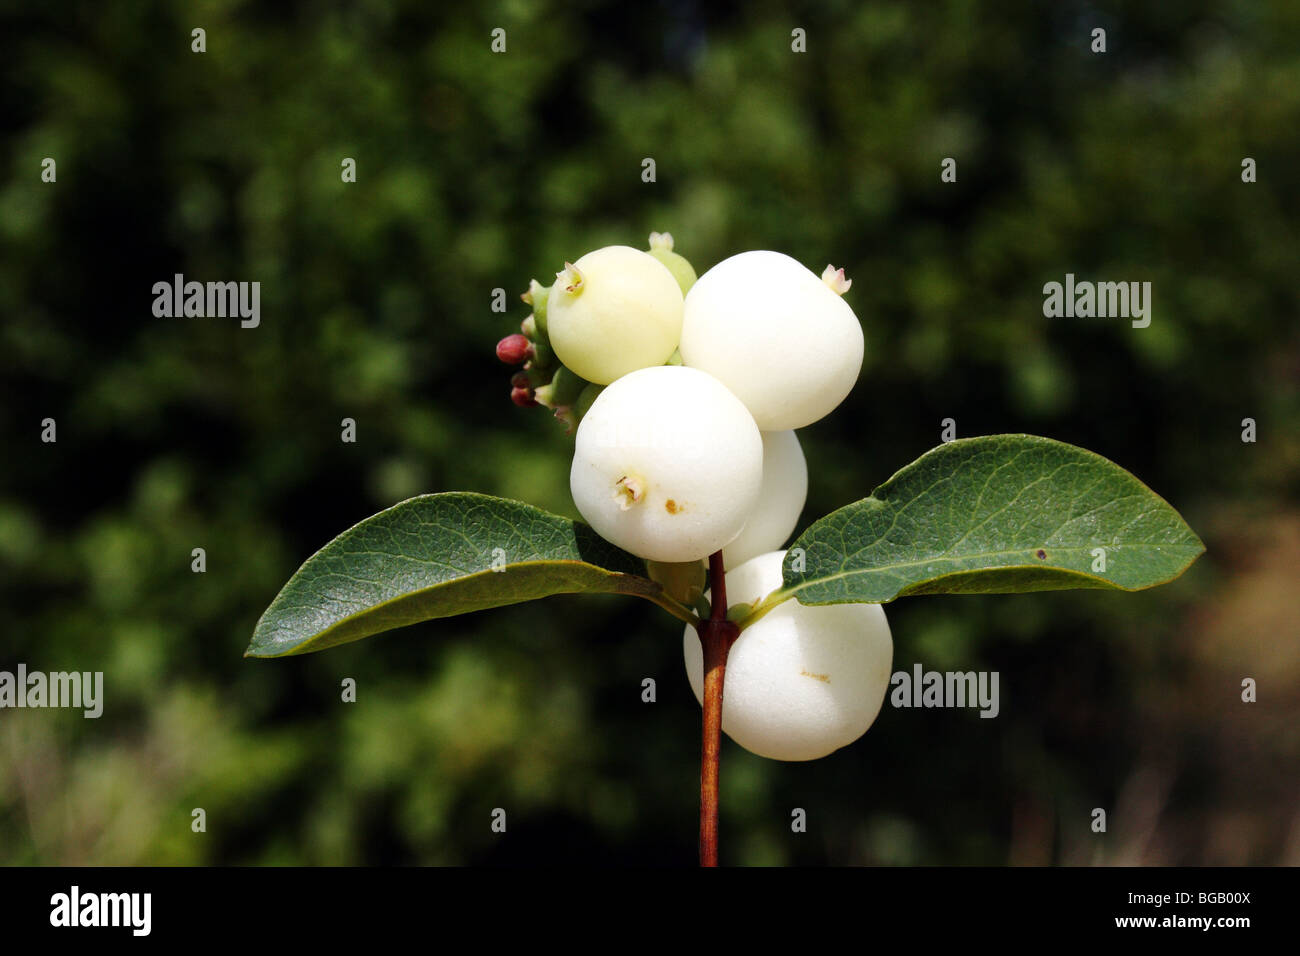 Snowberry Symphoricarpos albus Family Asteraceae Stock Photo